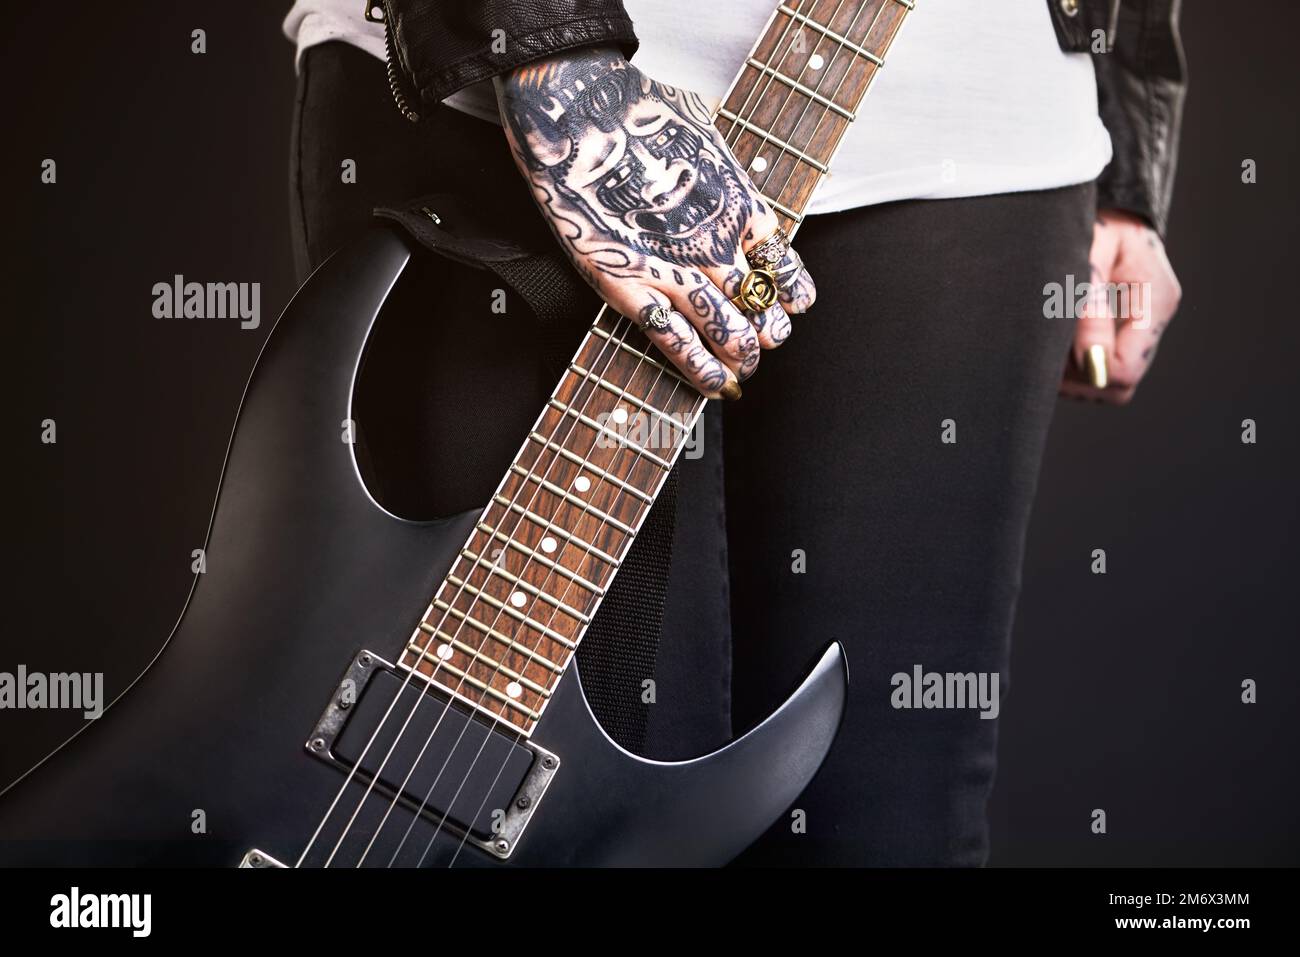 La vie des stars du rock. Photo studio d'un guitariste féminin tatoué. Banque D'Images